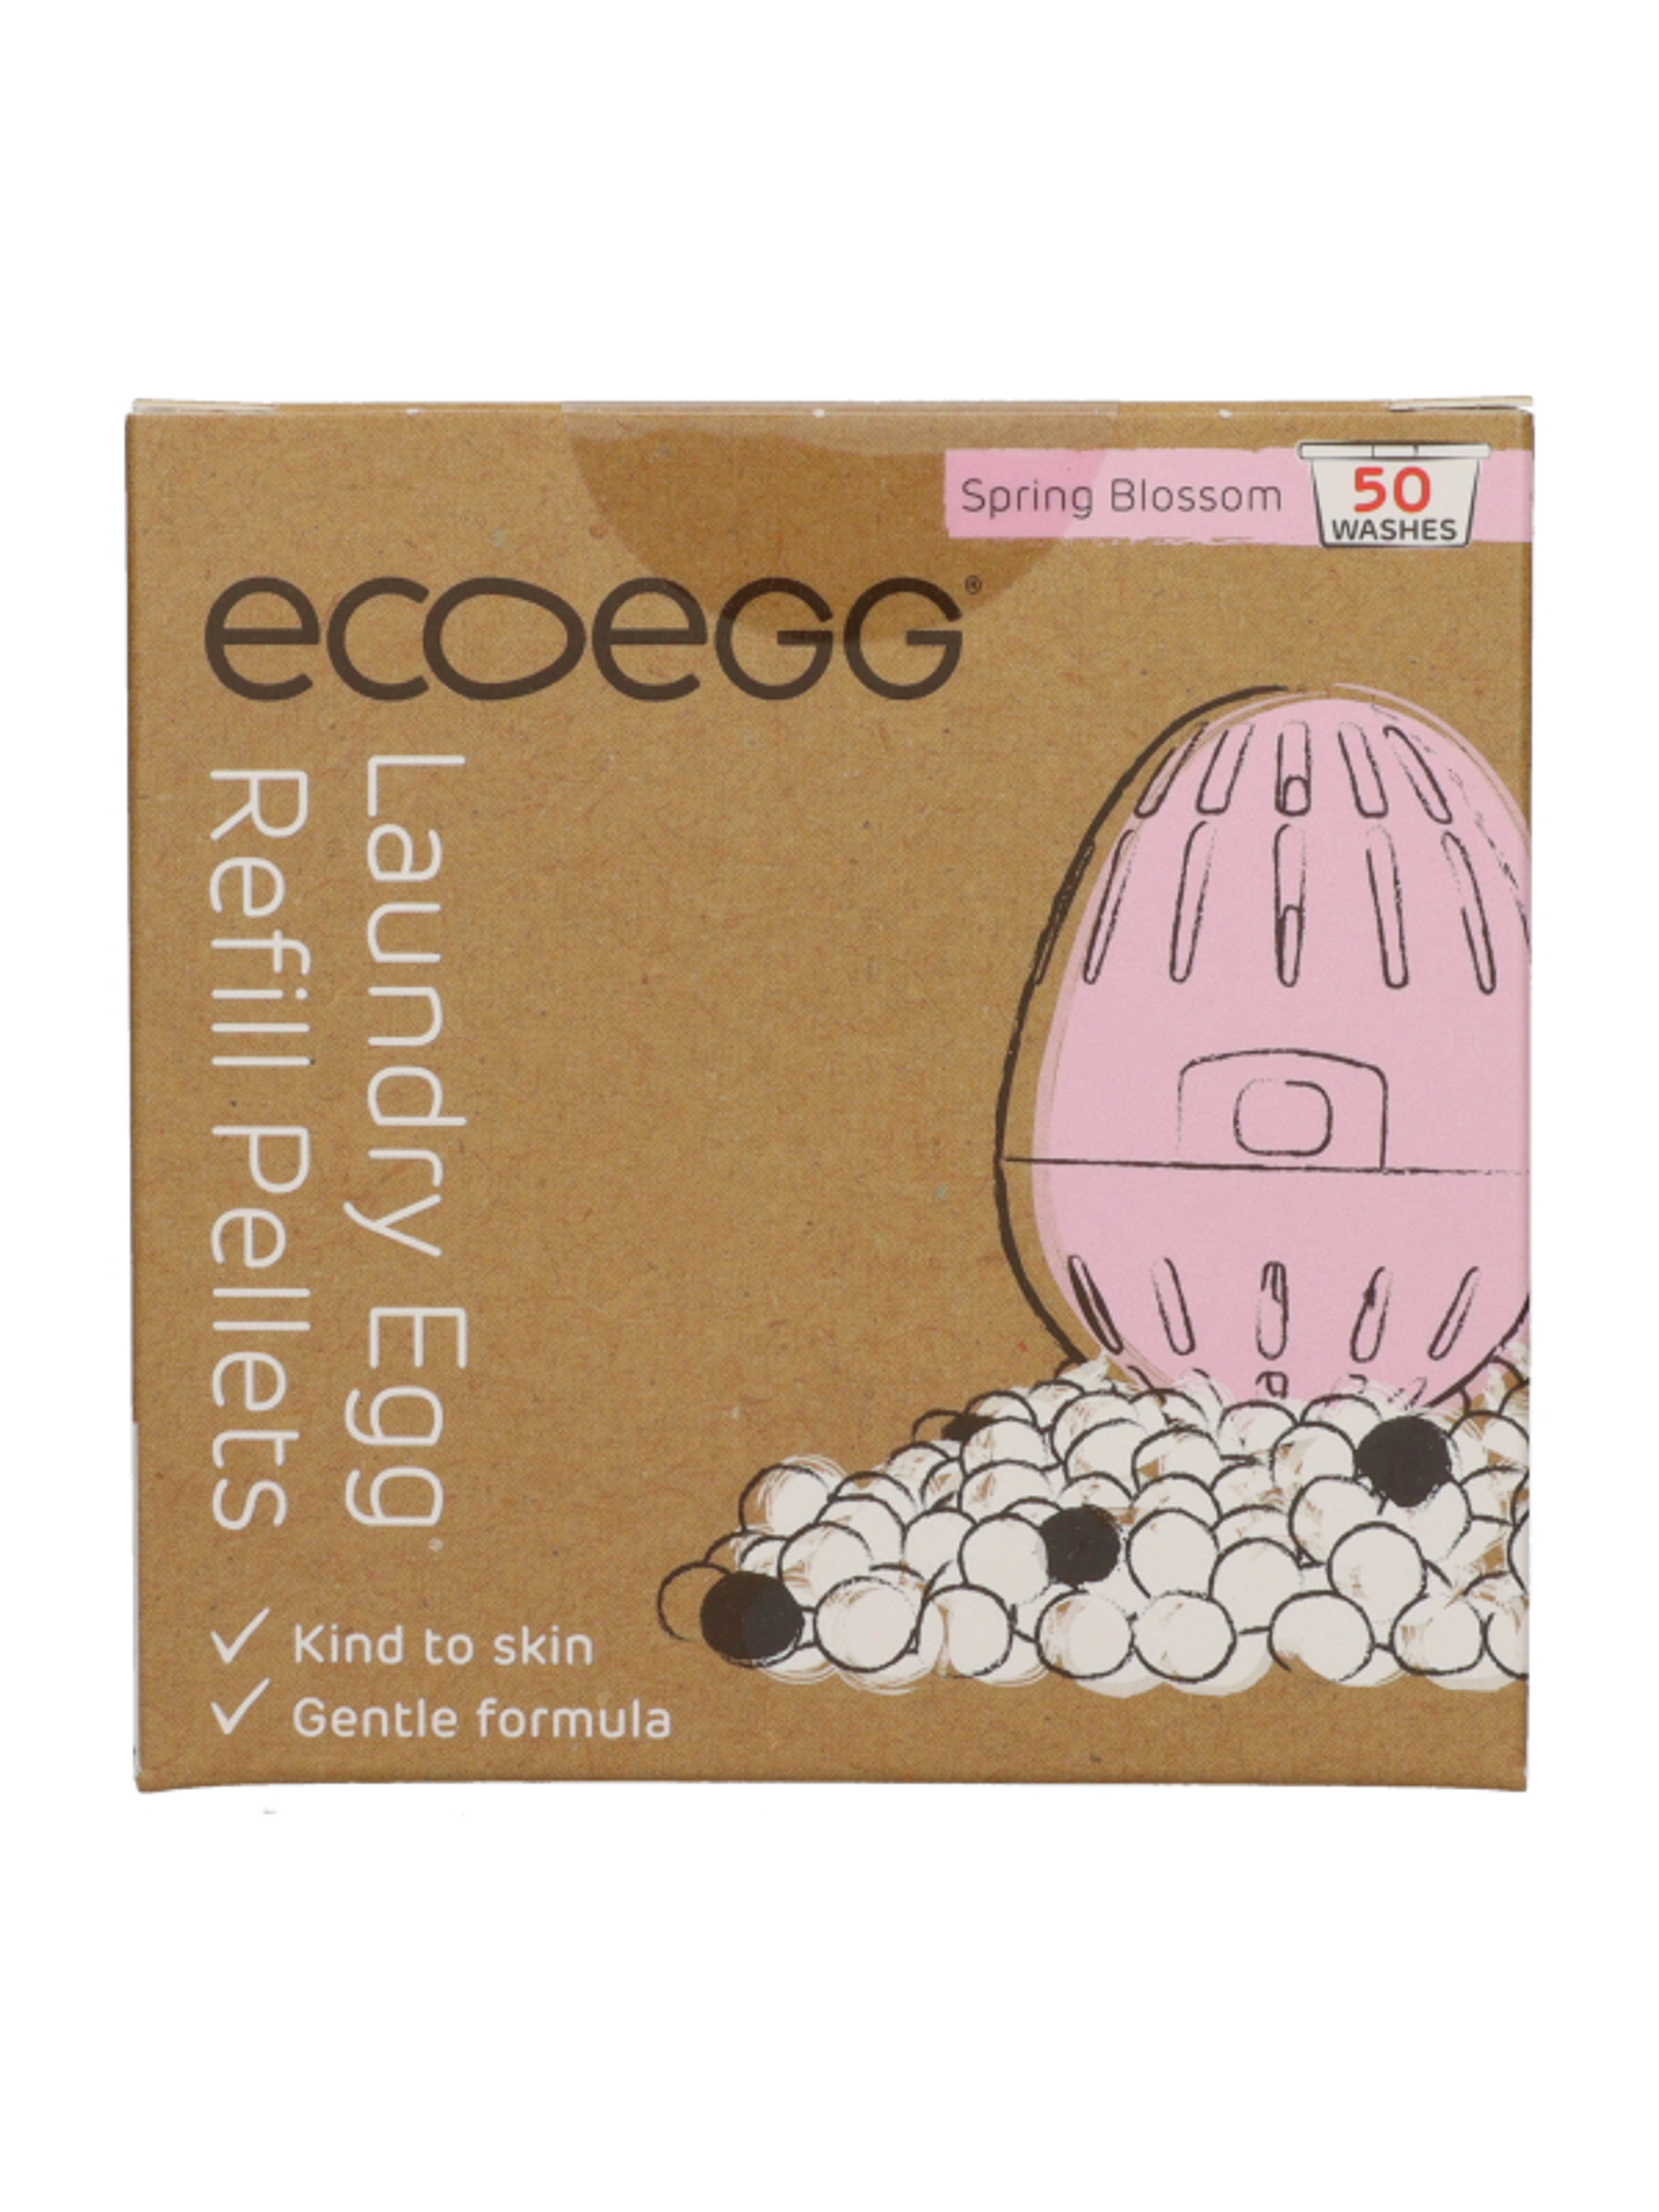 Ecoegg mosótojás utántöltő 50 mosás tavaszi virág illattal - 1 db